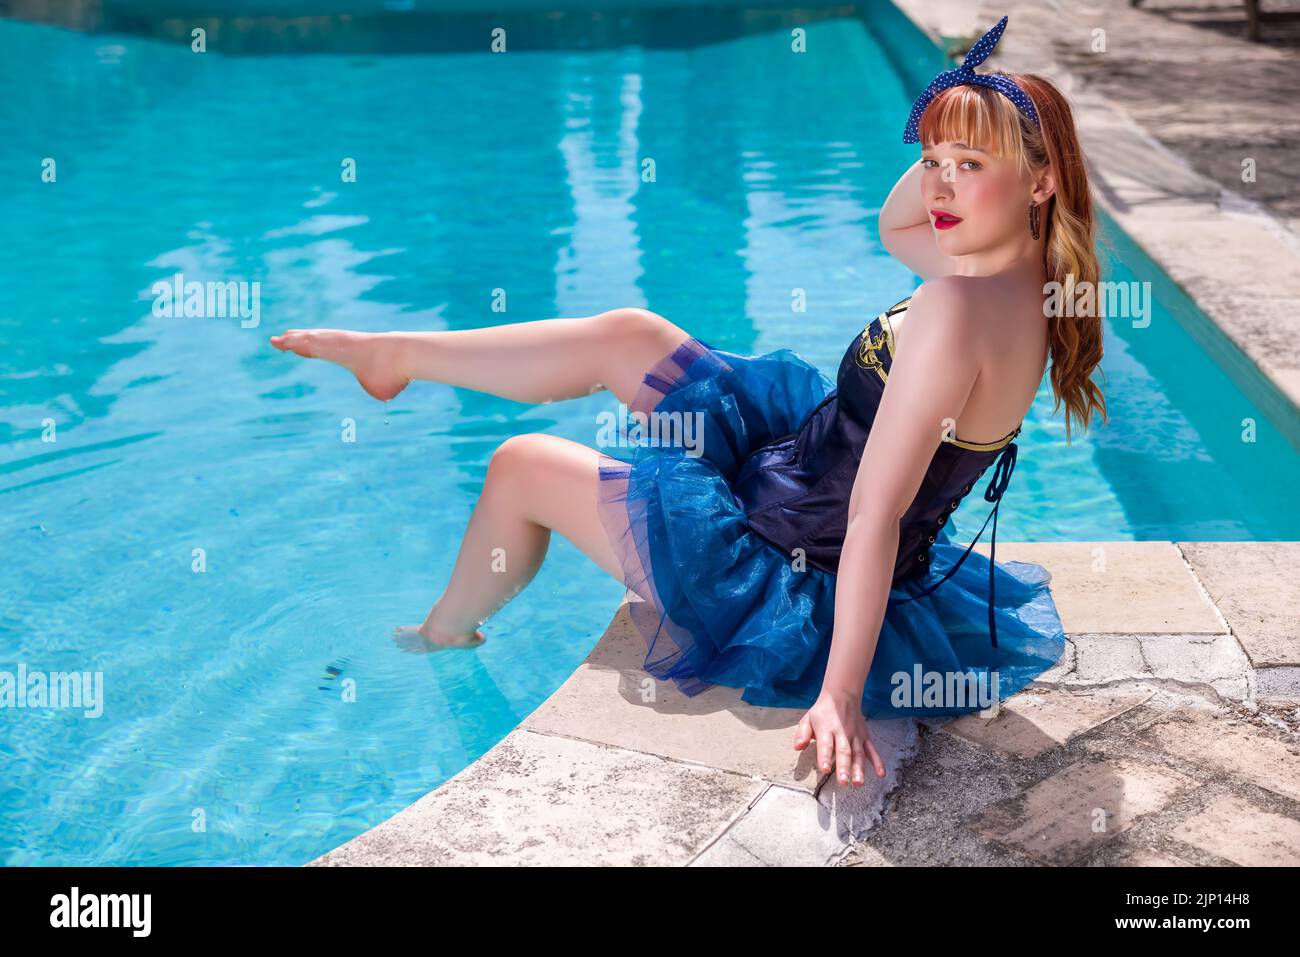 Atractiva mujer joven vestida con un traje de marinero sexy como una chica pinup en el borde de una piscina Foto de stock